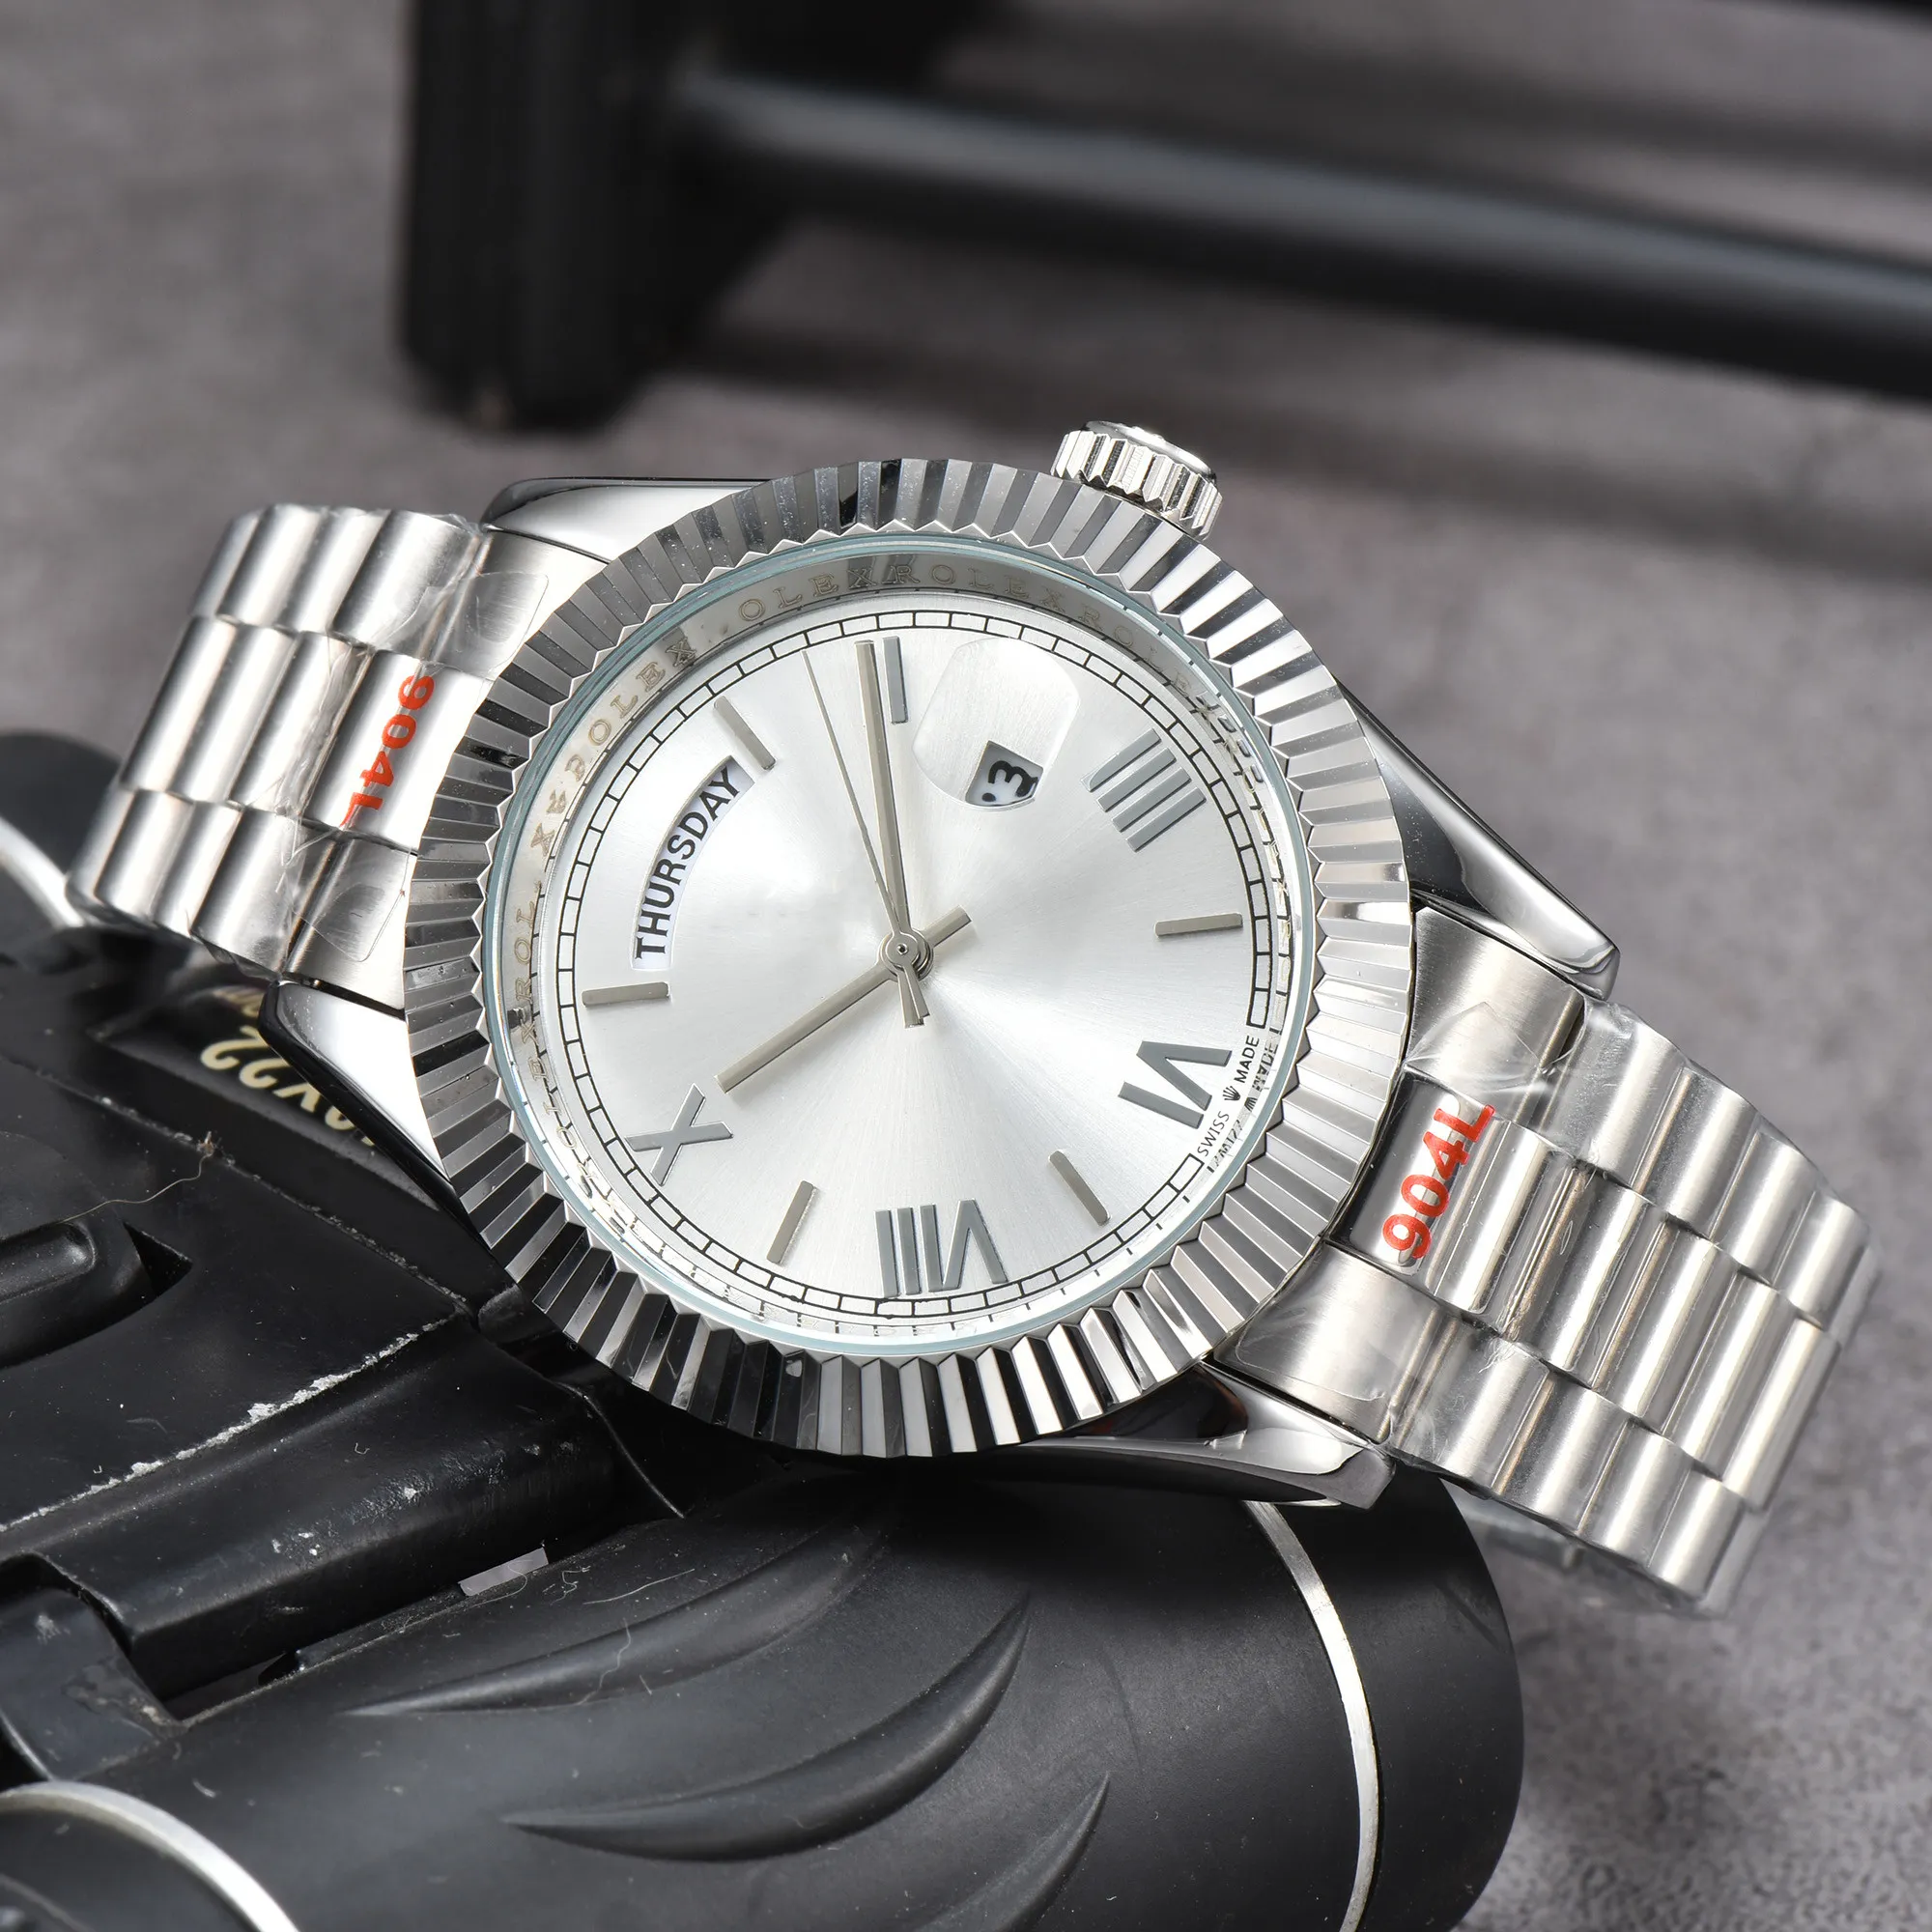 Relógio masculino DIA DATA de alta qualidade 41mm Quartz movimento automático relógios de aço inoxidável pulseira Jubileu Homens relógio papéis fullset relógios de pulso